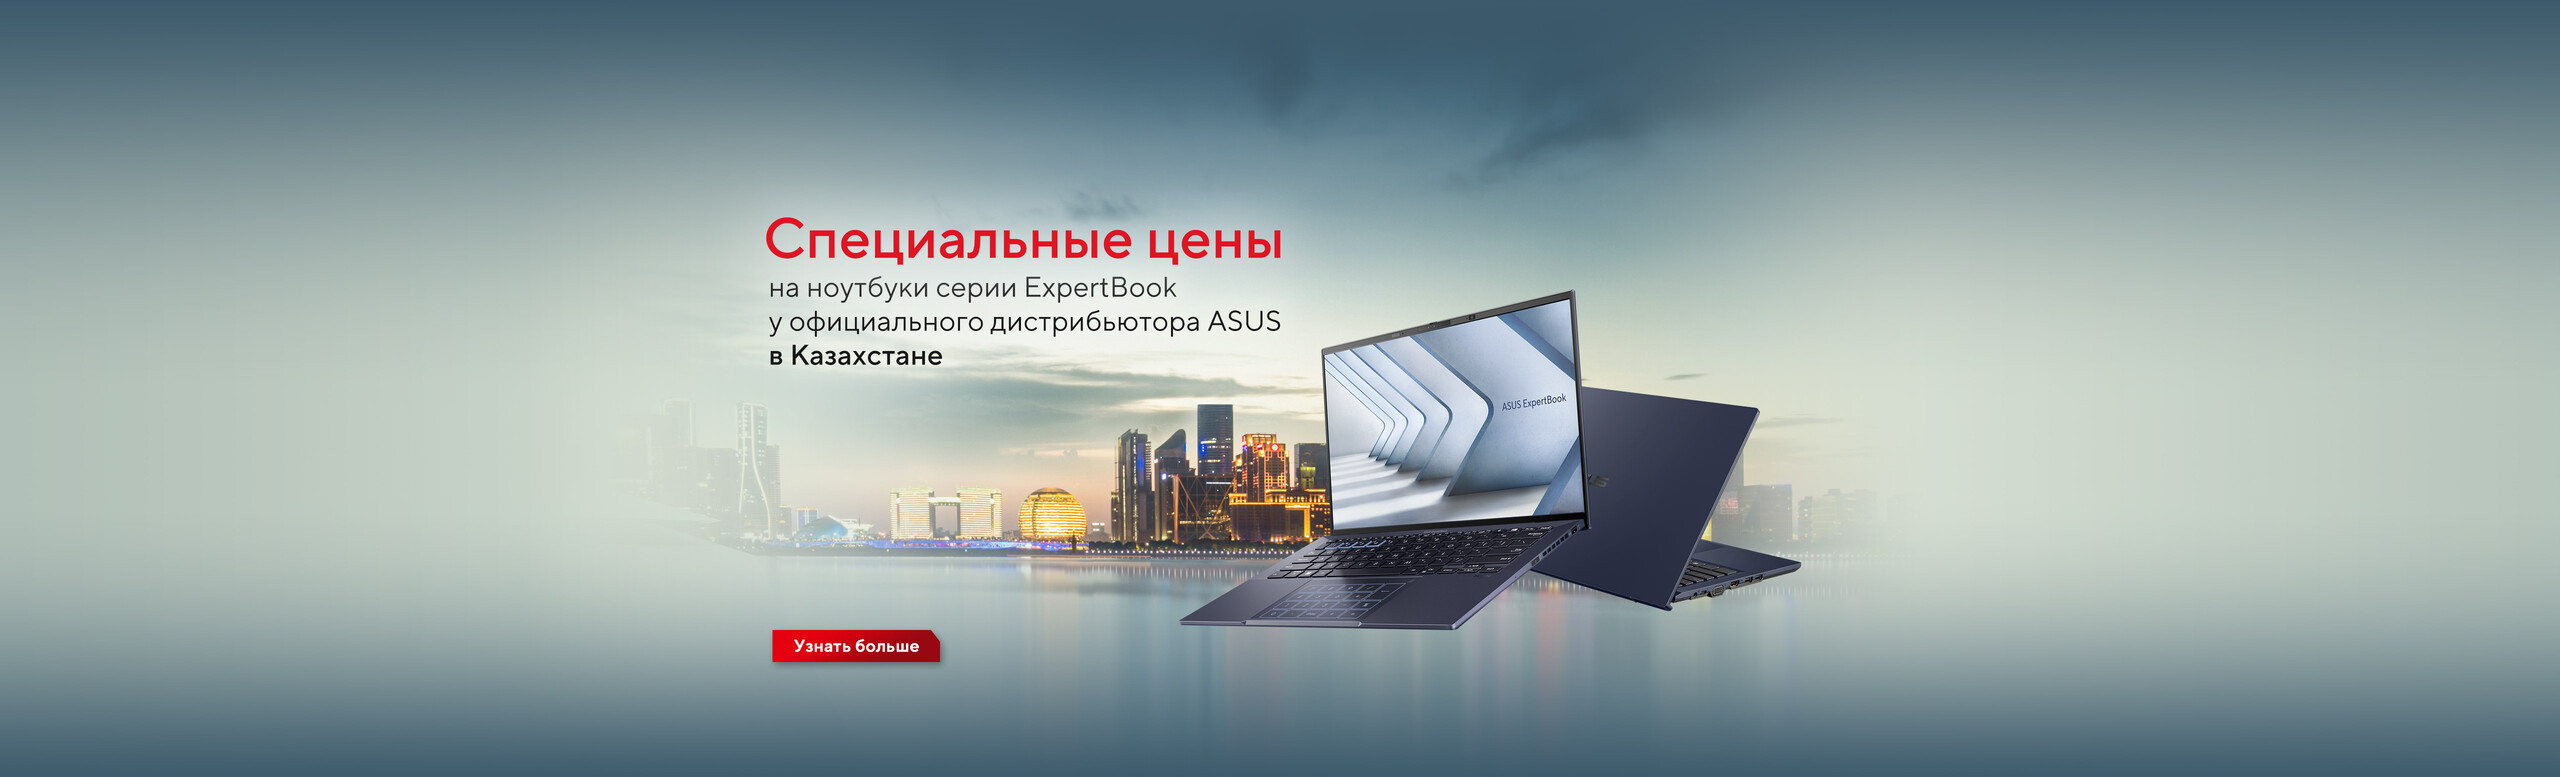 СПЕЦИАЛЬНЫЕ ЦЕНЫ на ноутбуки серии ExpertBook у официального дистрибьютора ASUS в Казахстане